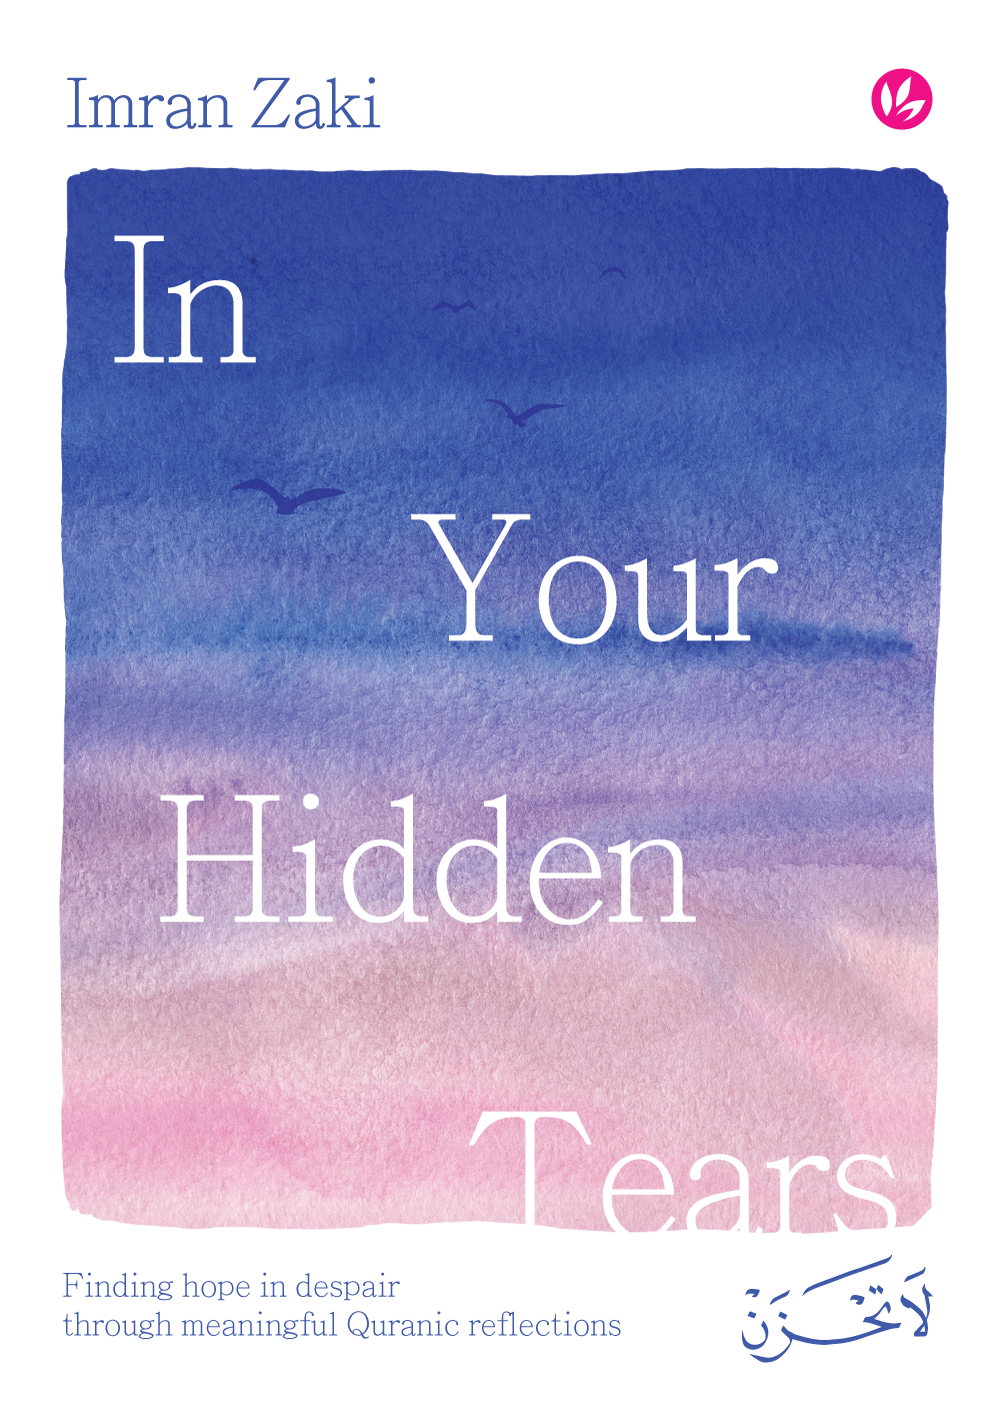 Iman Publication Broken Tears Combo kit-kombo-broken-tears